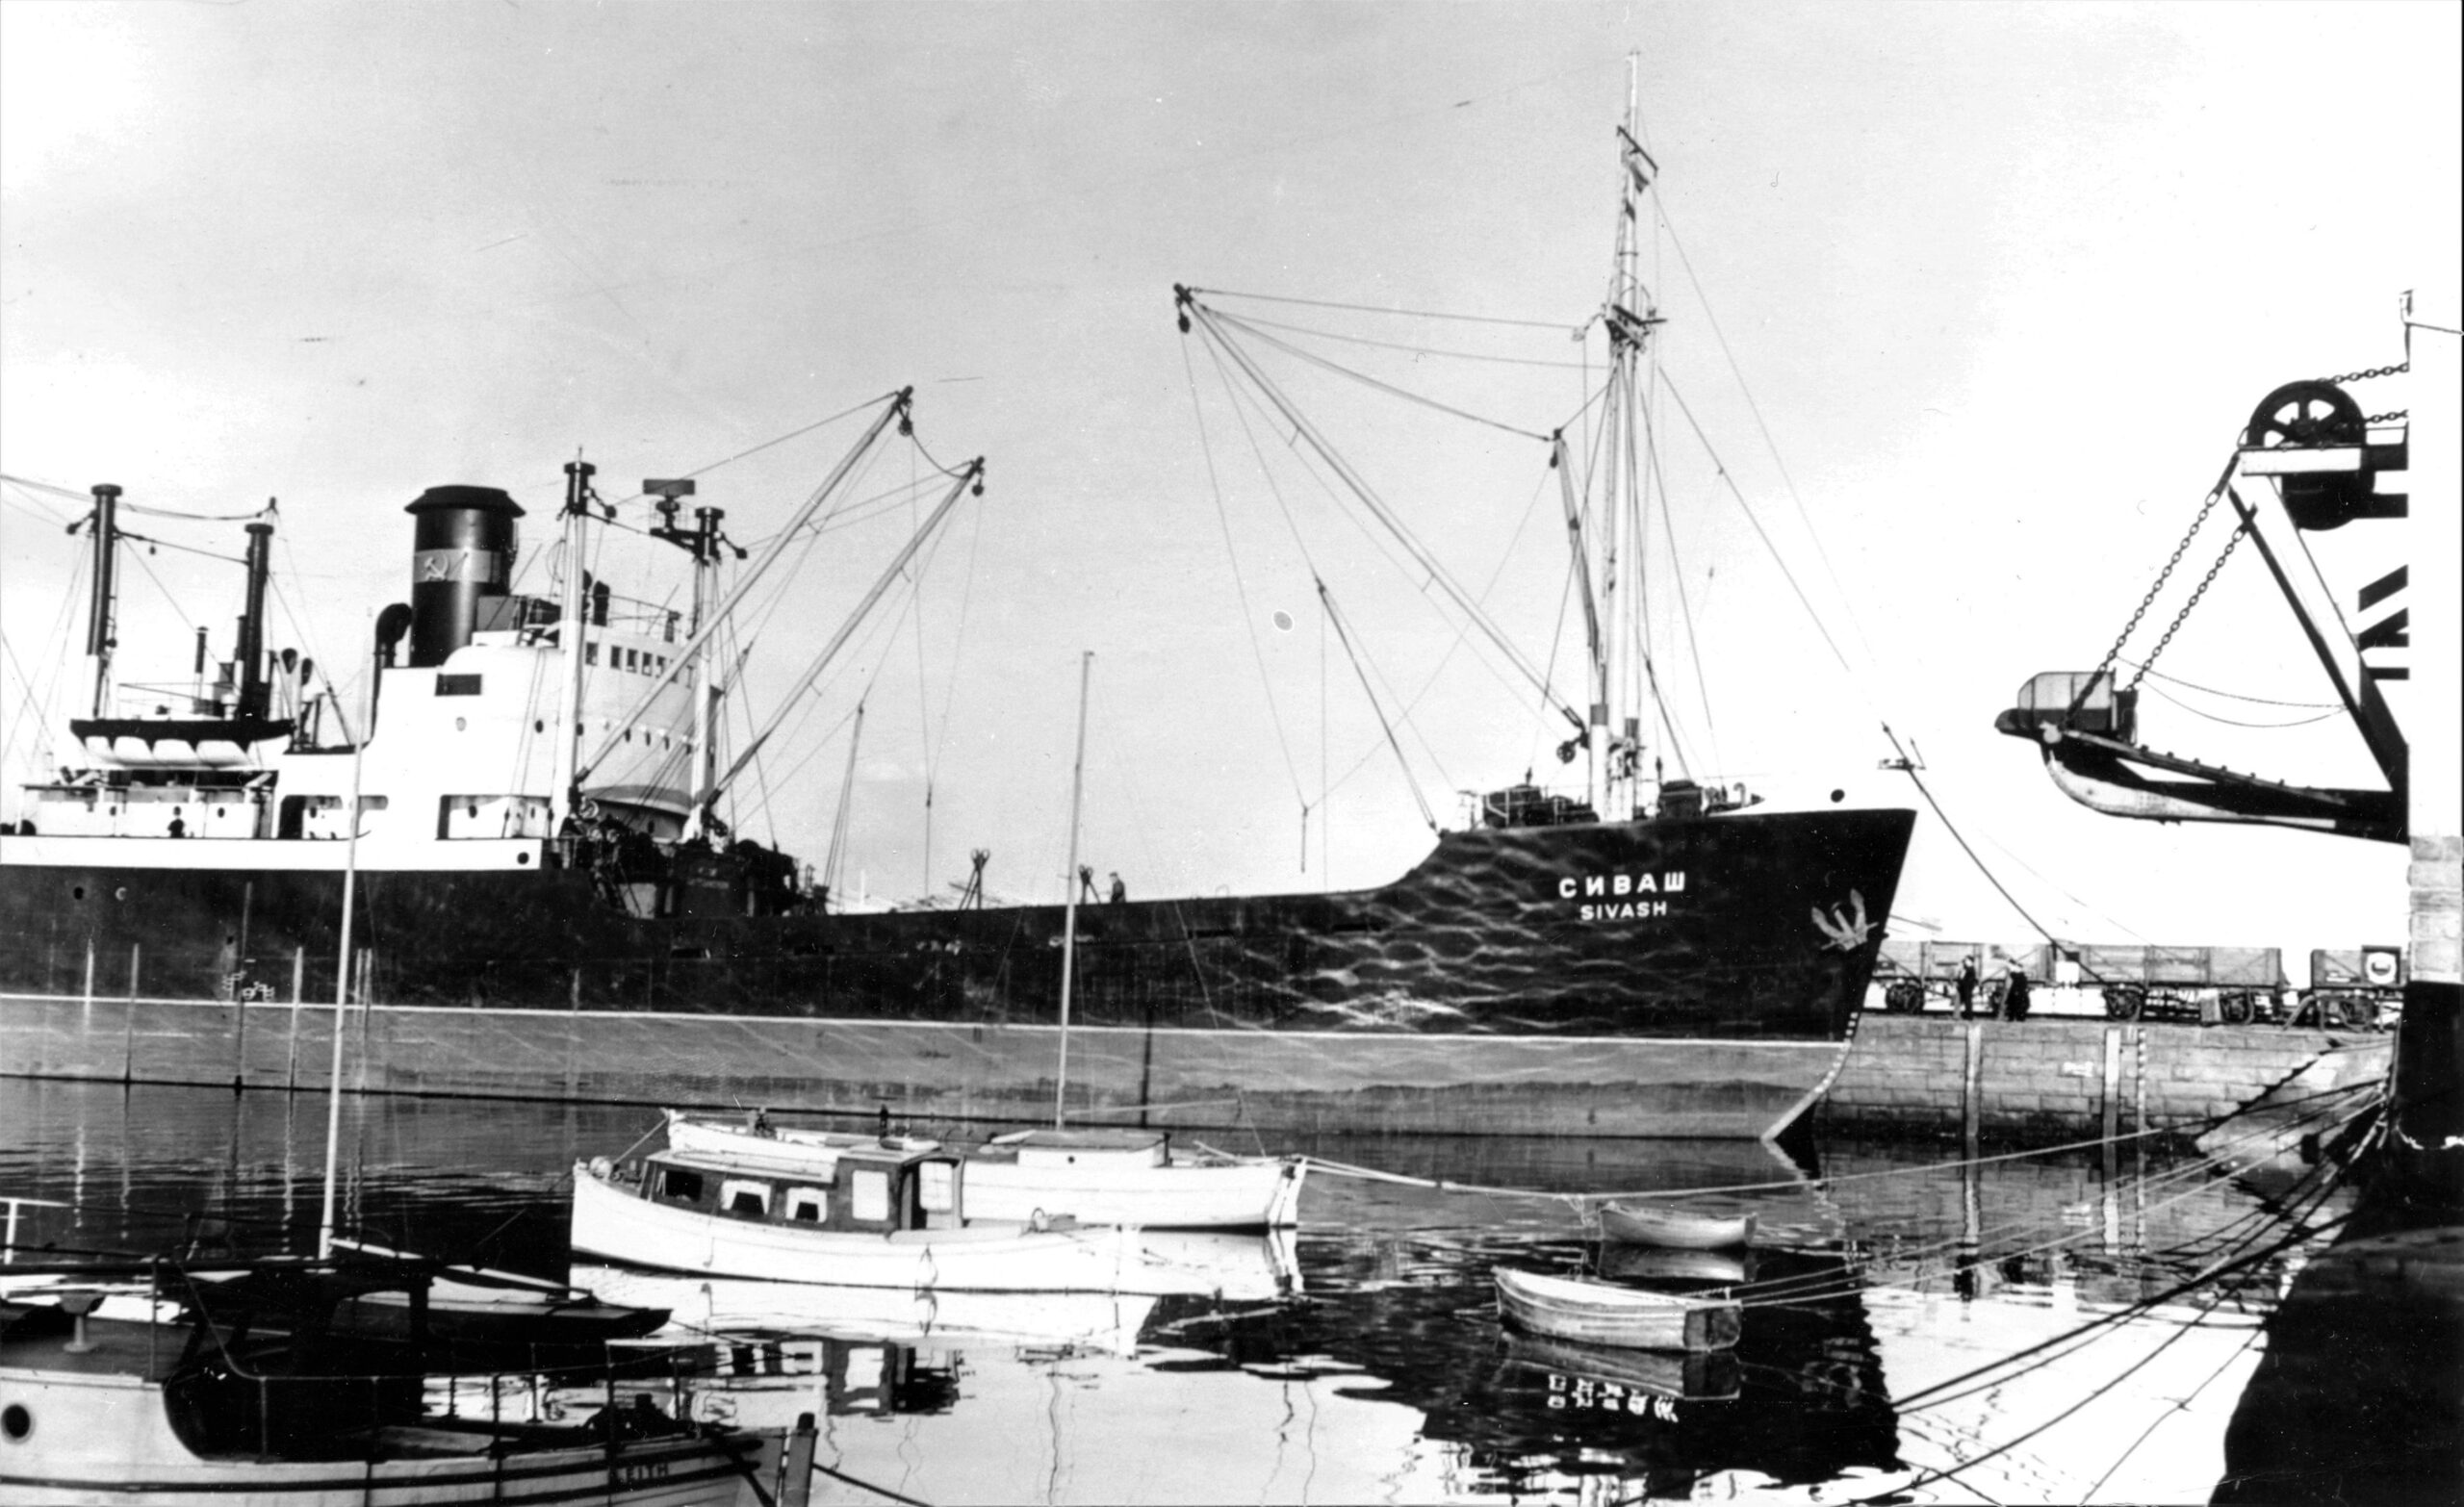 Tayport Heritage Trail - Board 24 - Large Russian vessel unloading cargo